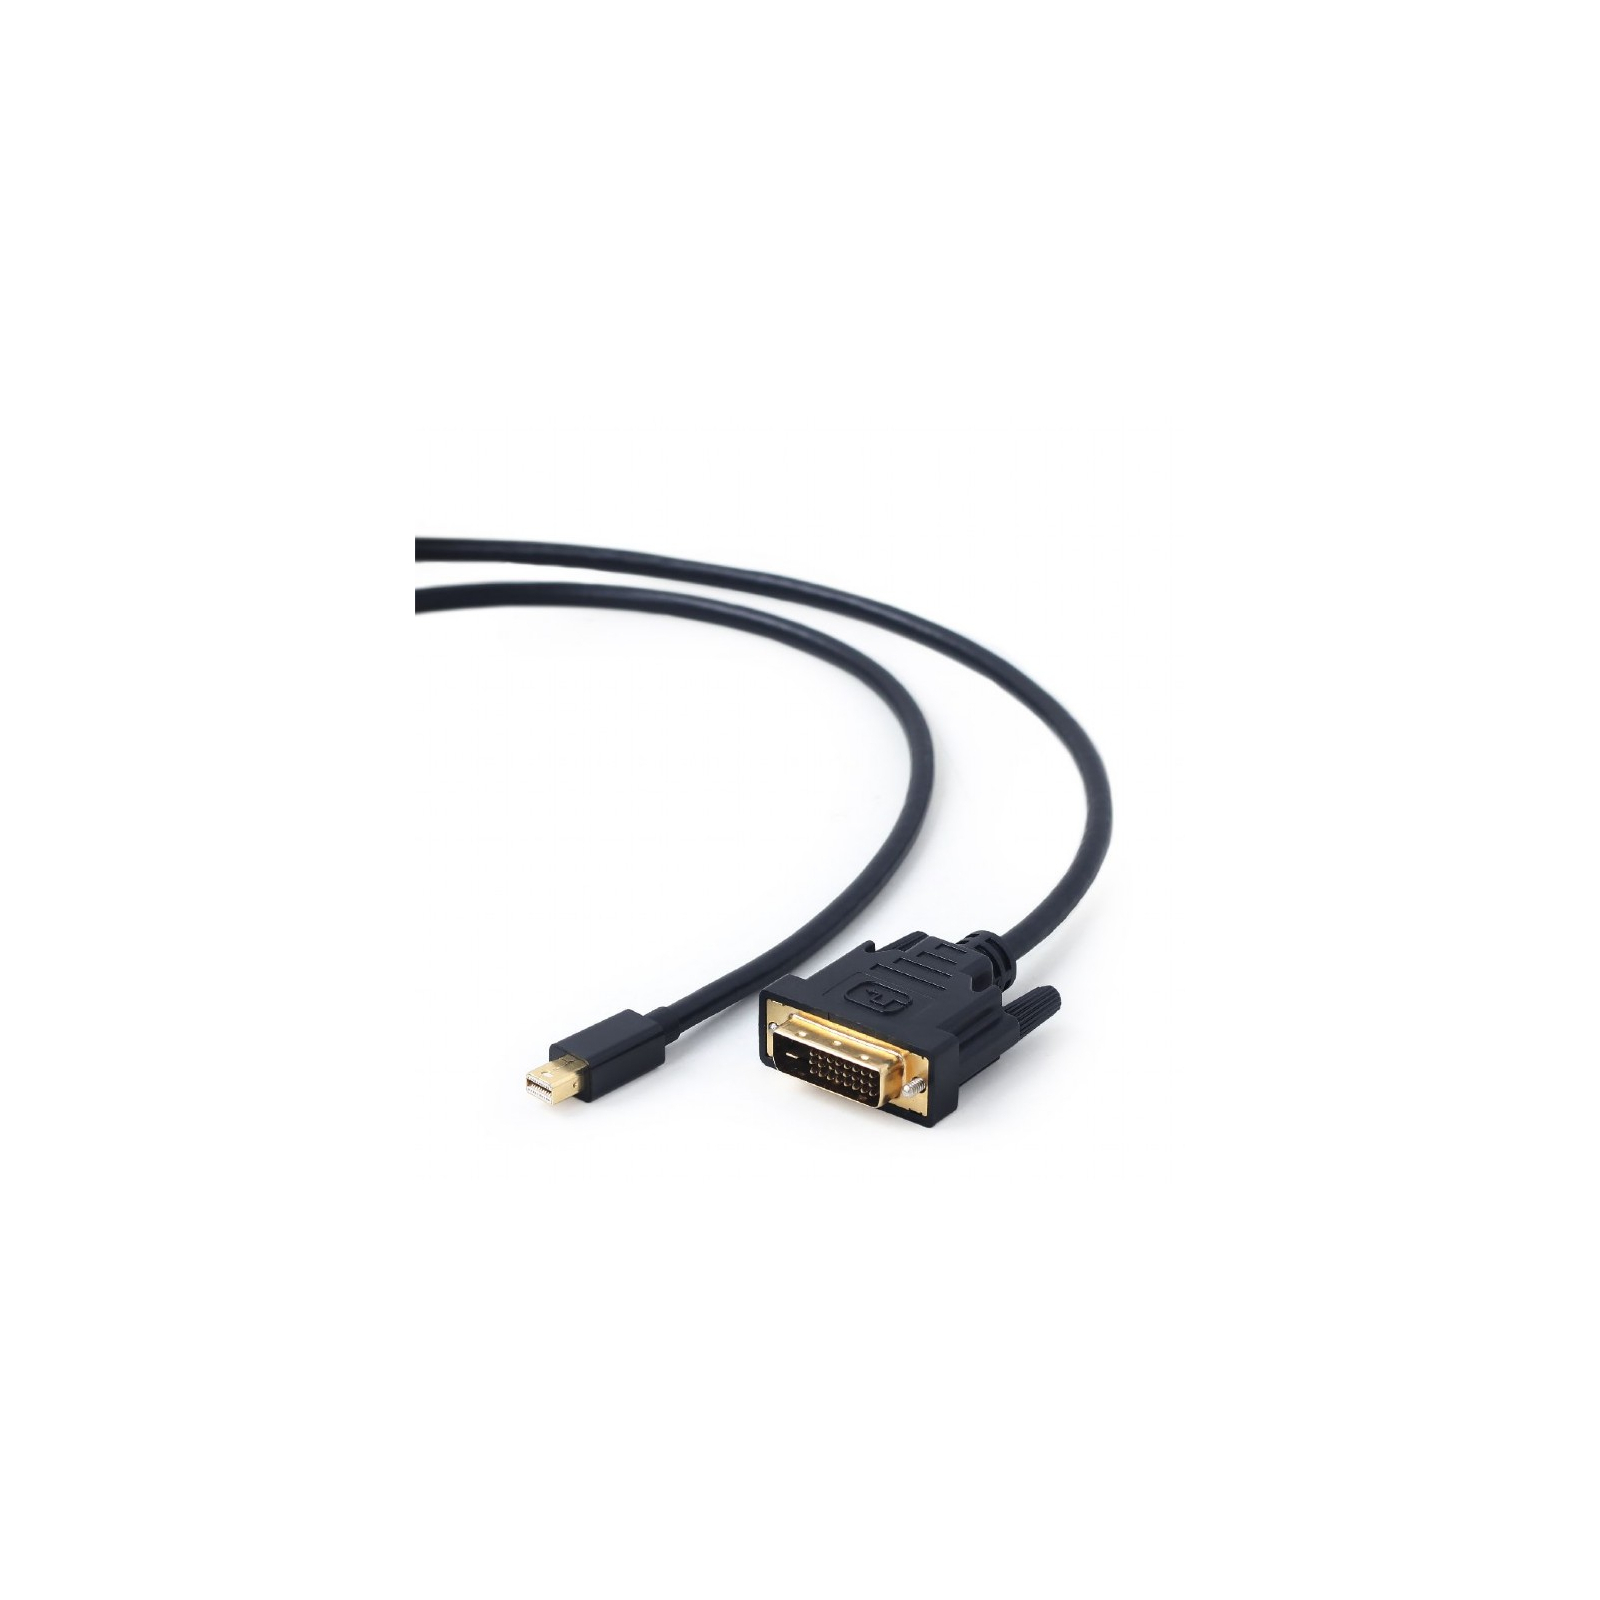 Кабель мультимедийный miniDisplayPort to DVI 1.8m Cablexpert (CC-mDPM-DVIM-6) изображение 2